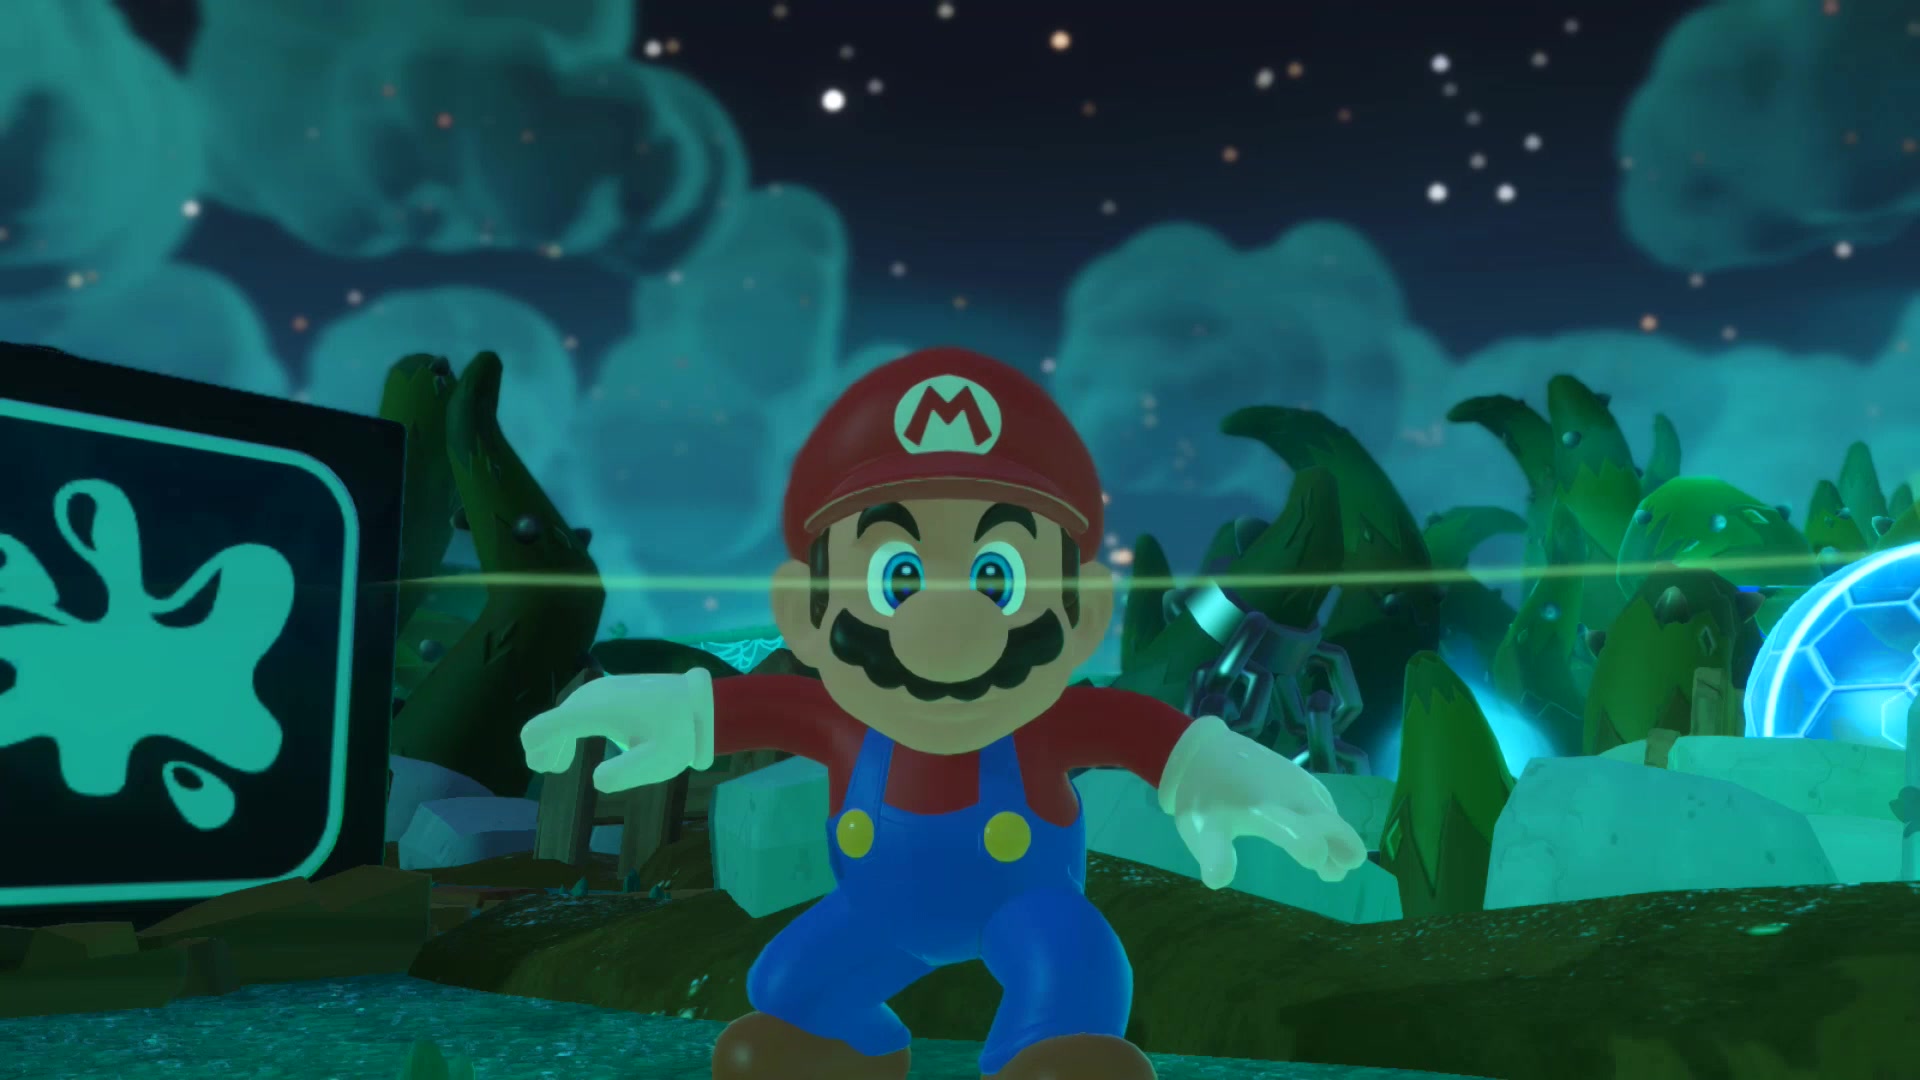 Watch Luigi's Mansion 3 Gameplay - Zebra Gamer on